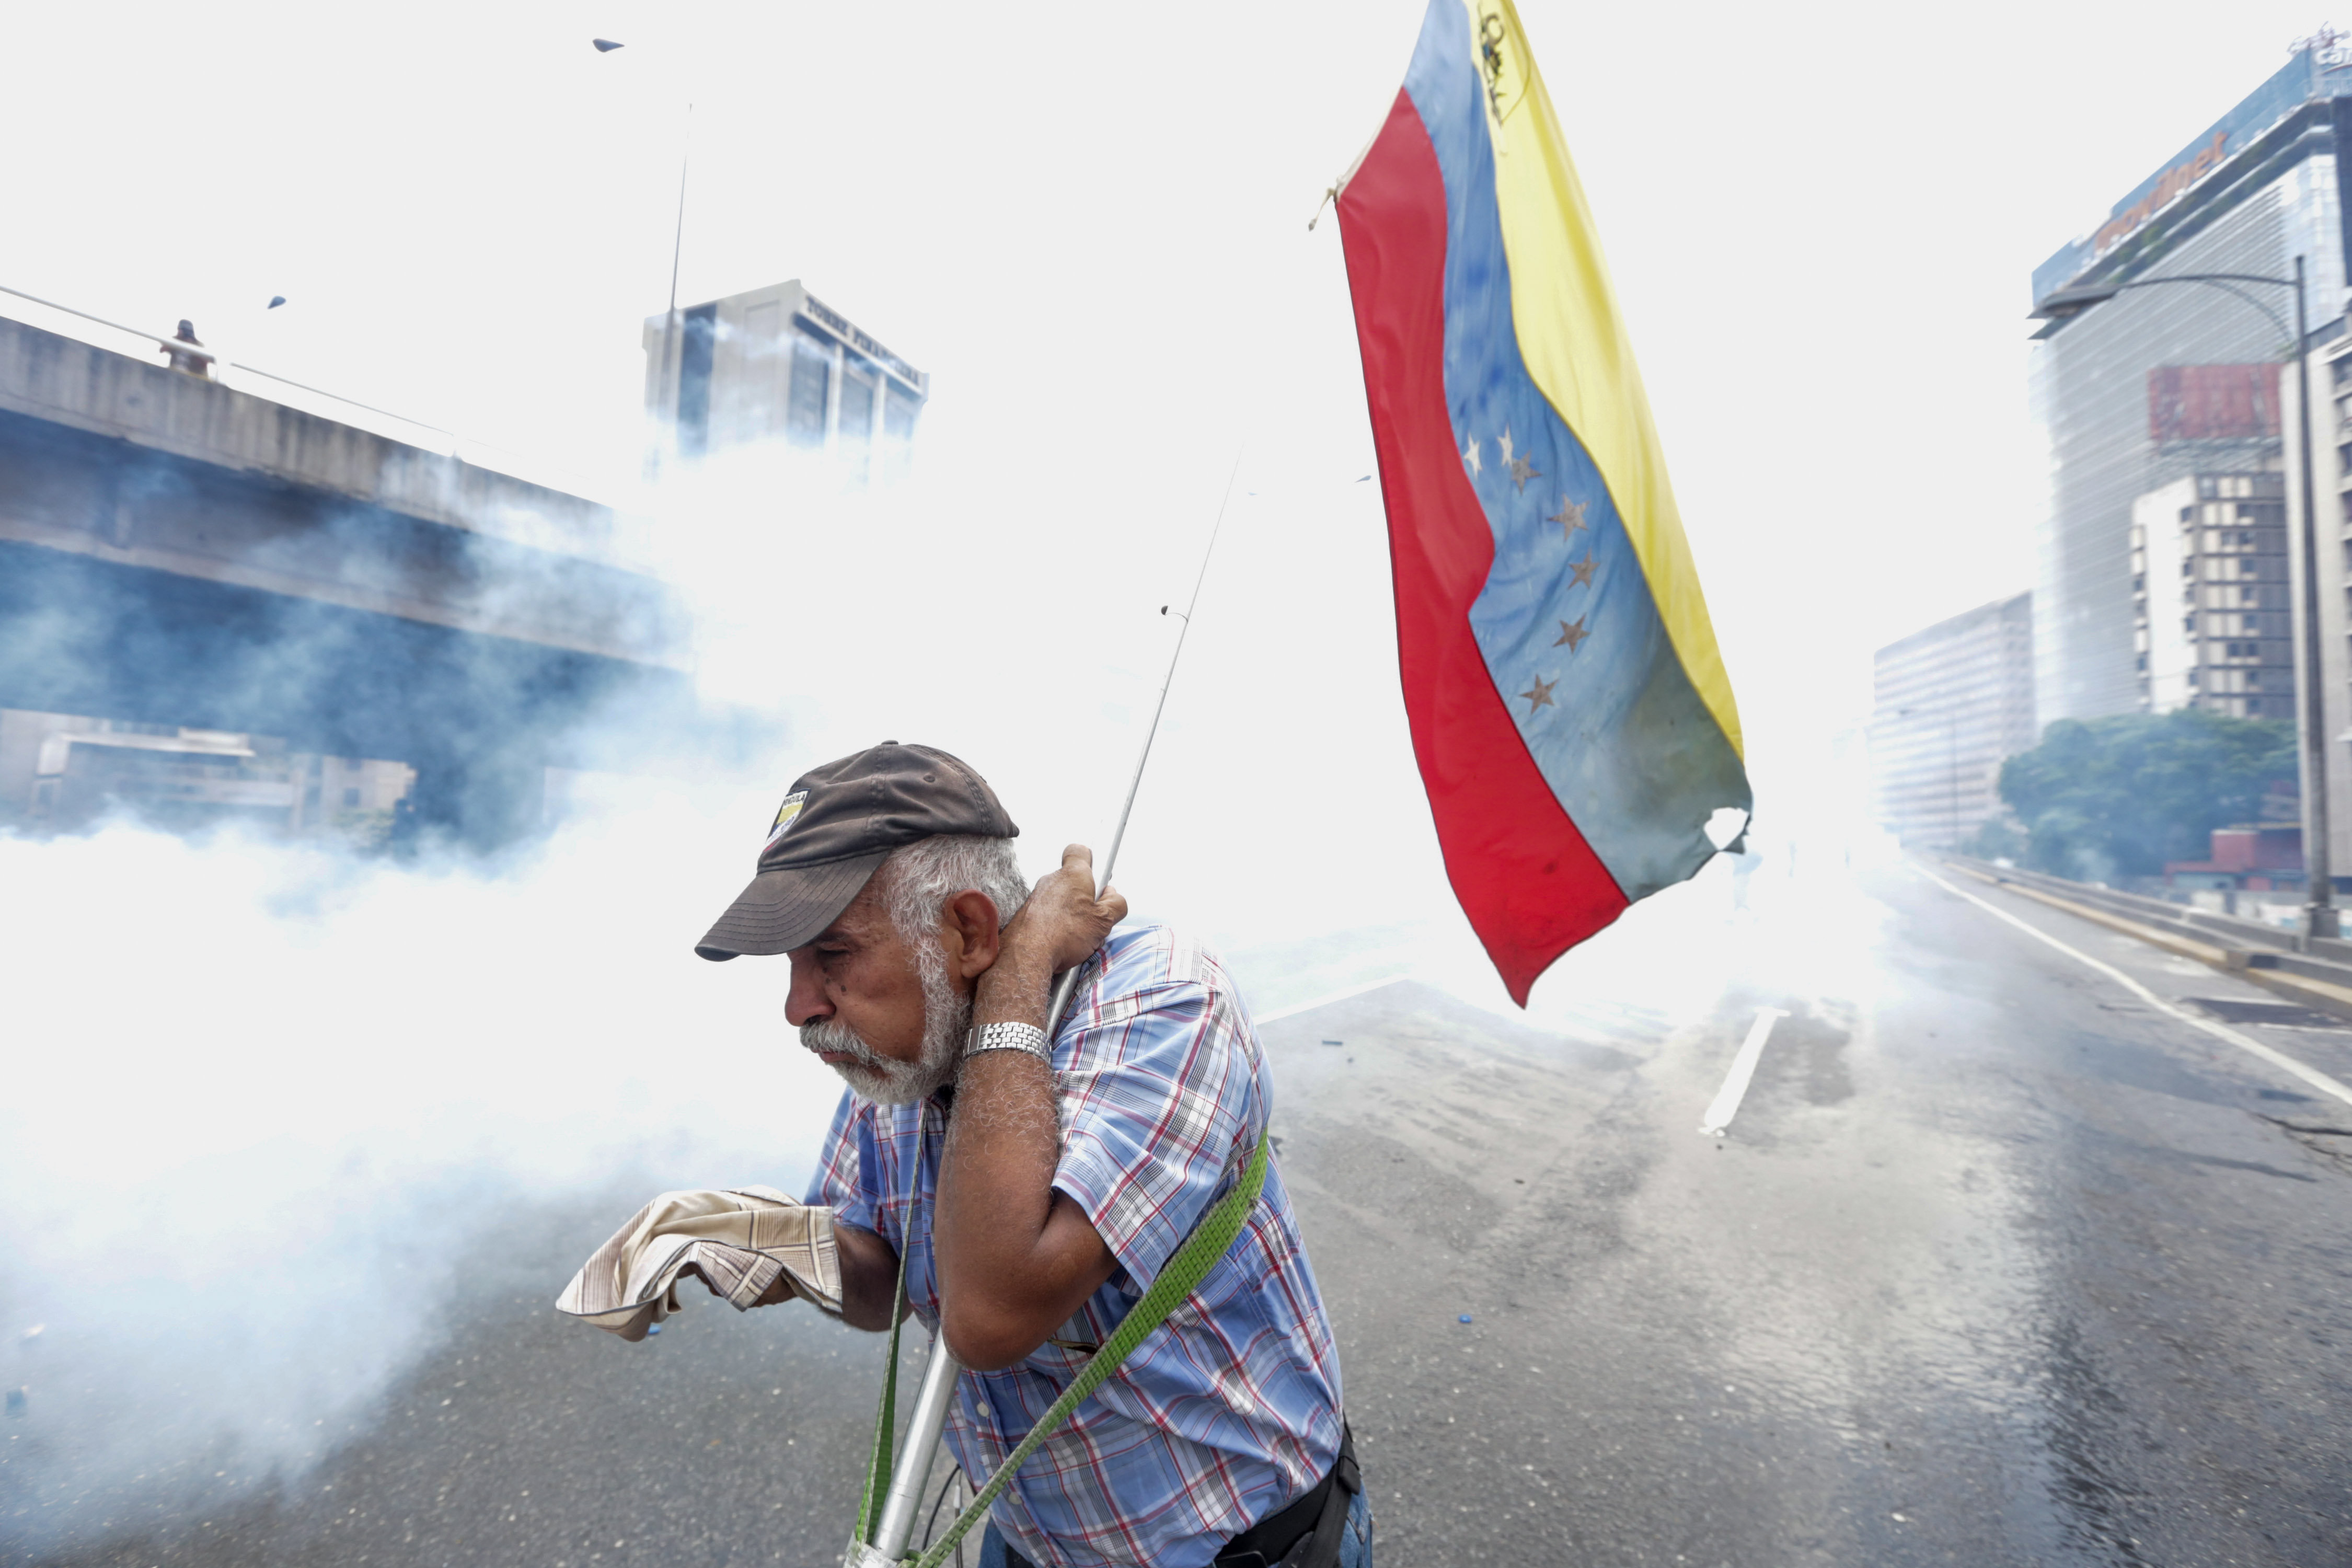 La Unión Europea condena actos de violencia en Venezuela y pide hallar soluciones constitucionales